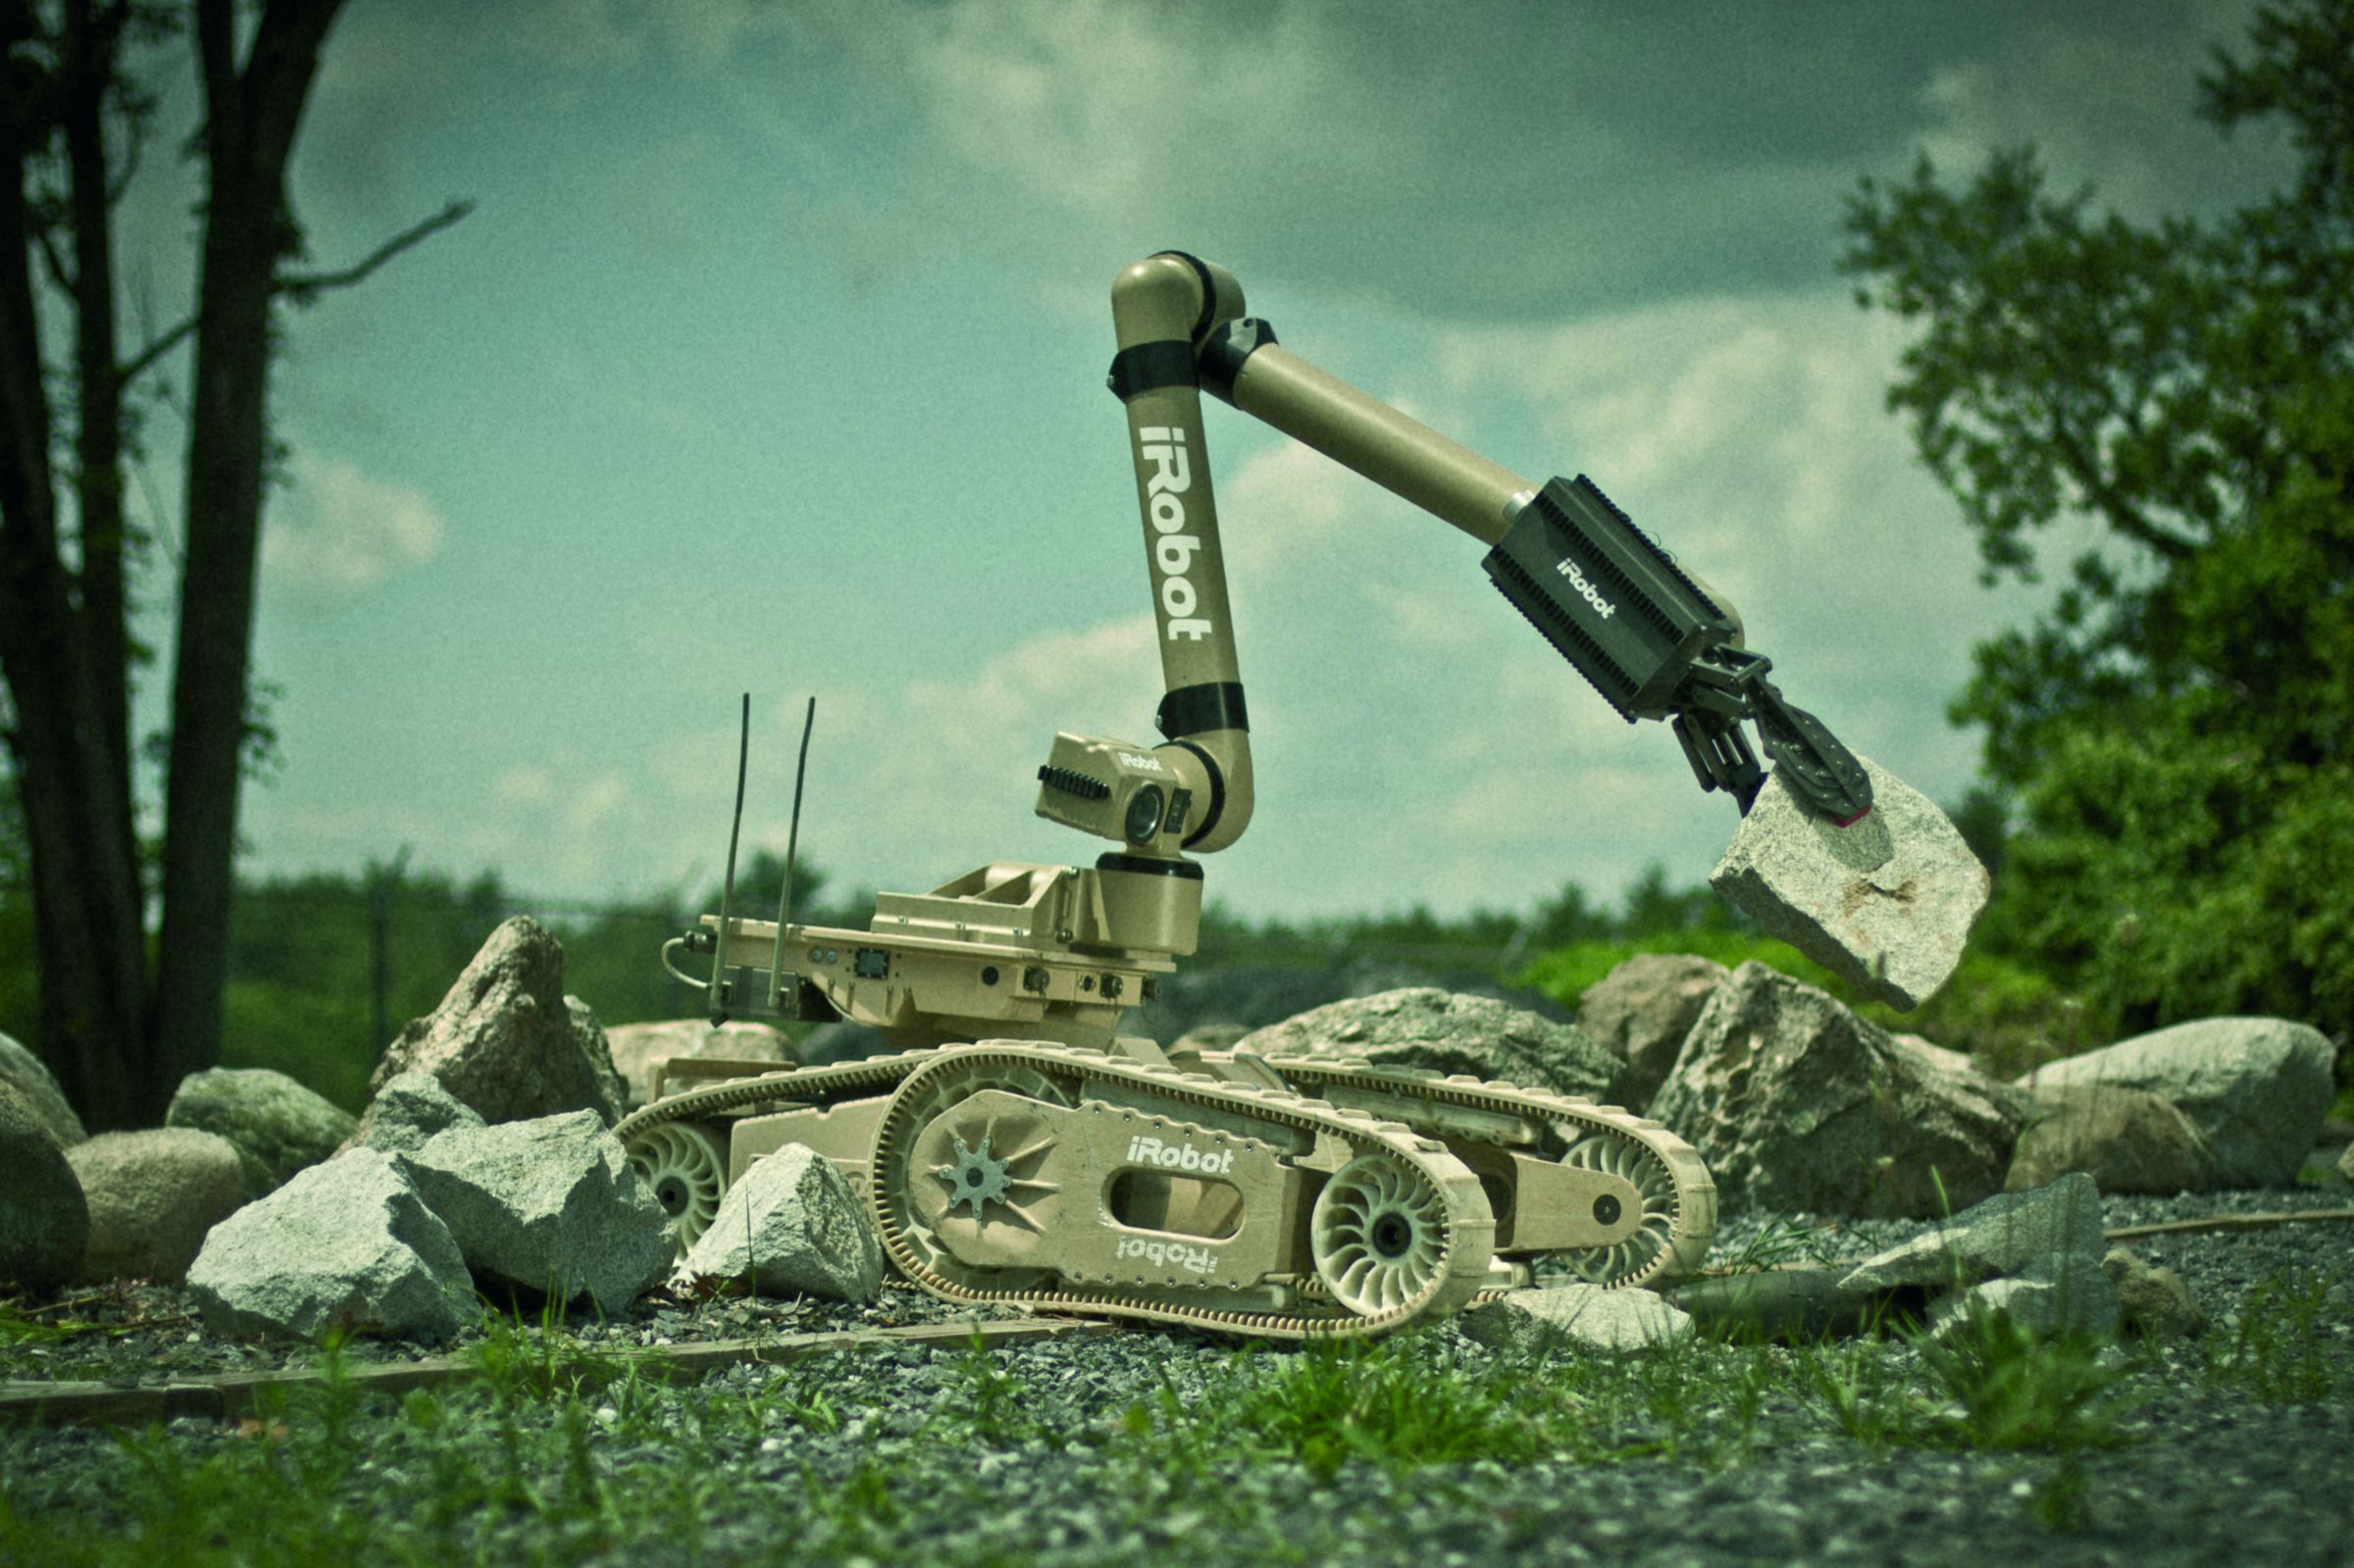 iRobot's bots of wars